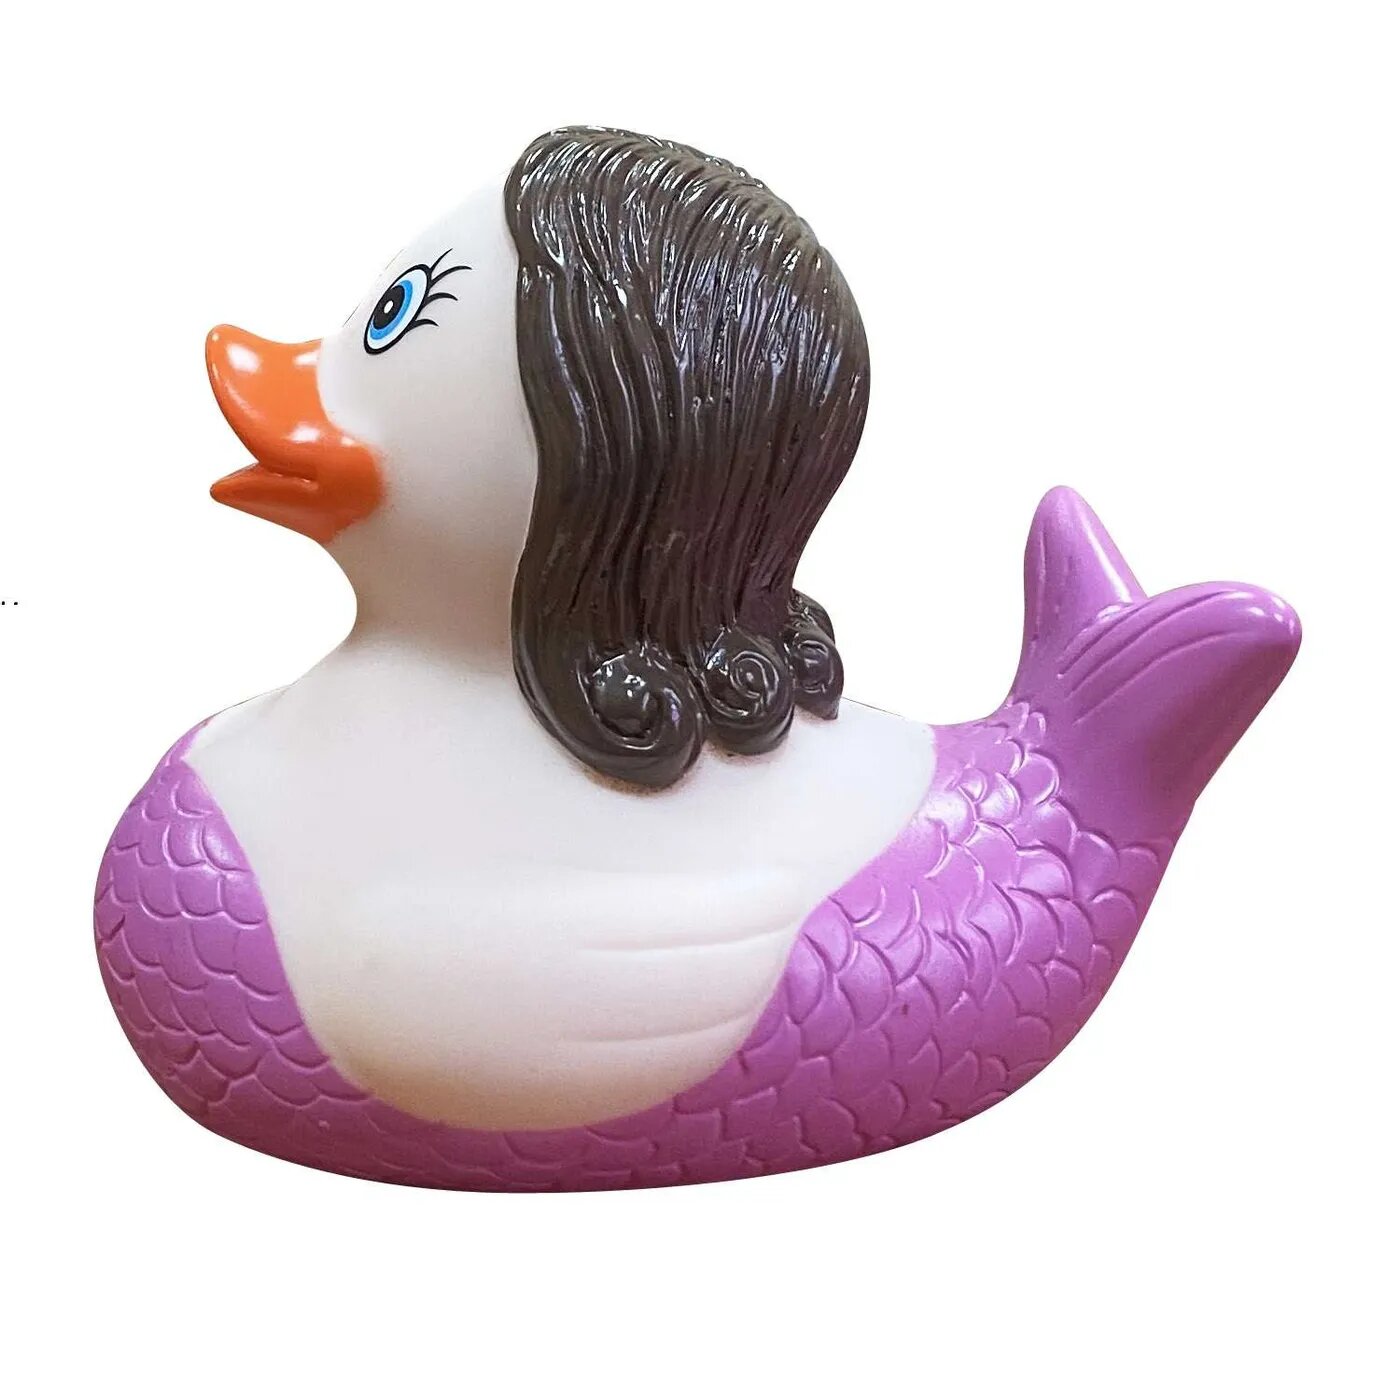 Игрушка Funny ducks для ванной Русалка уточка 1301